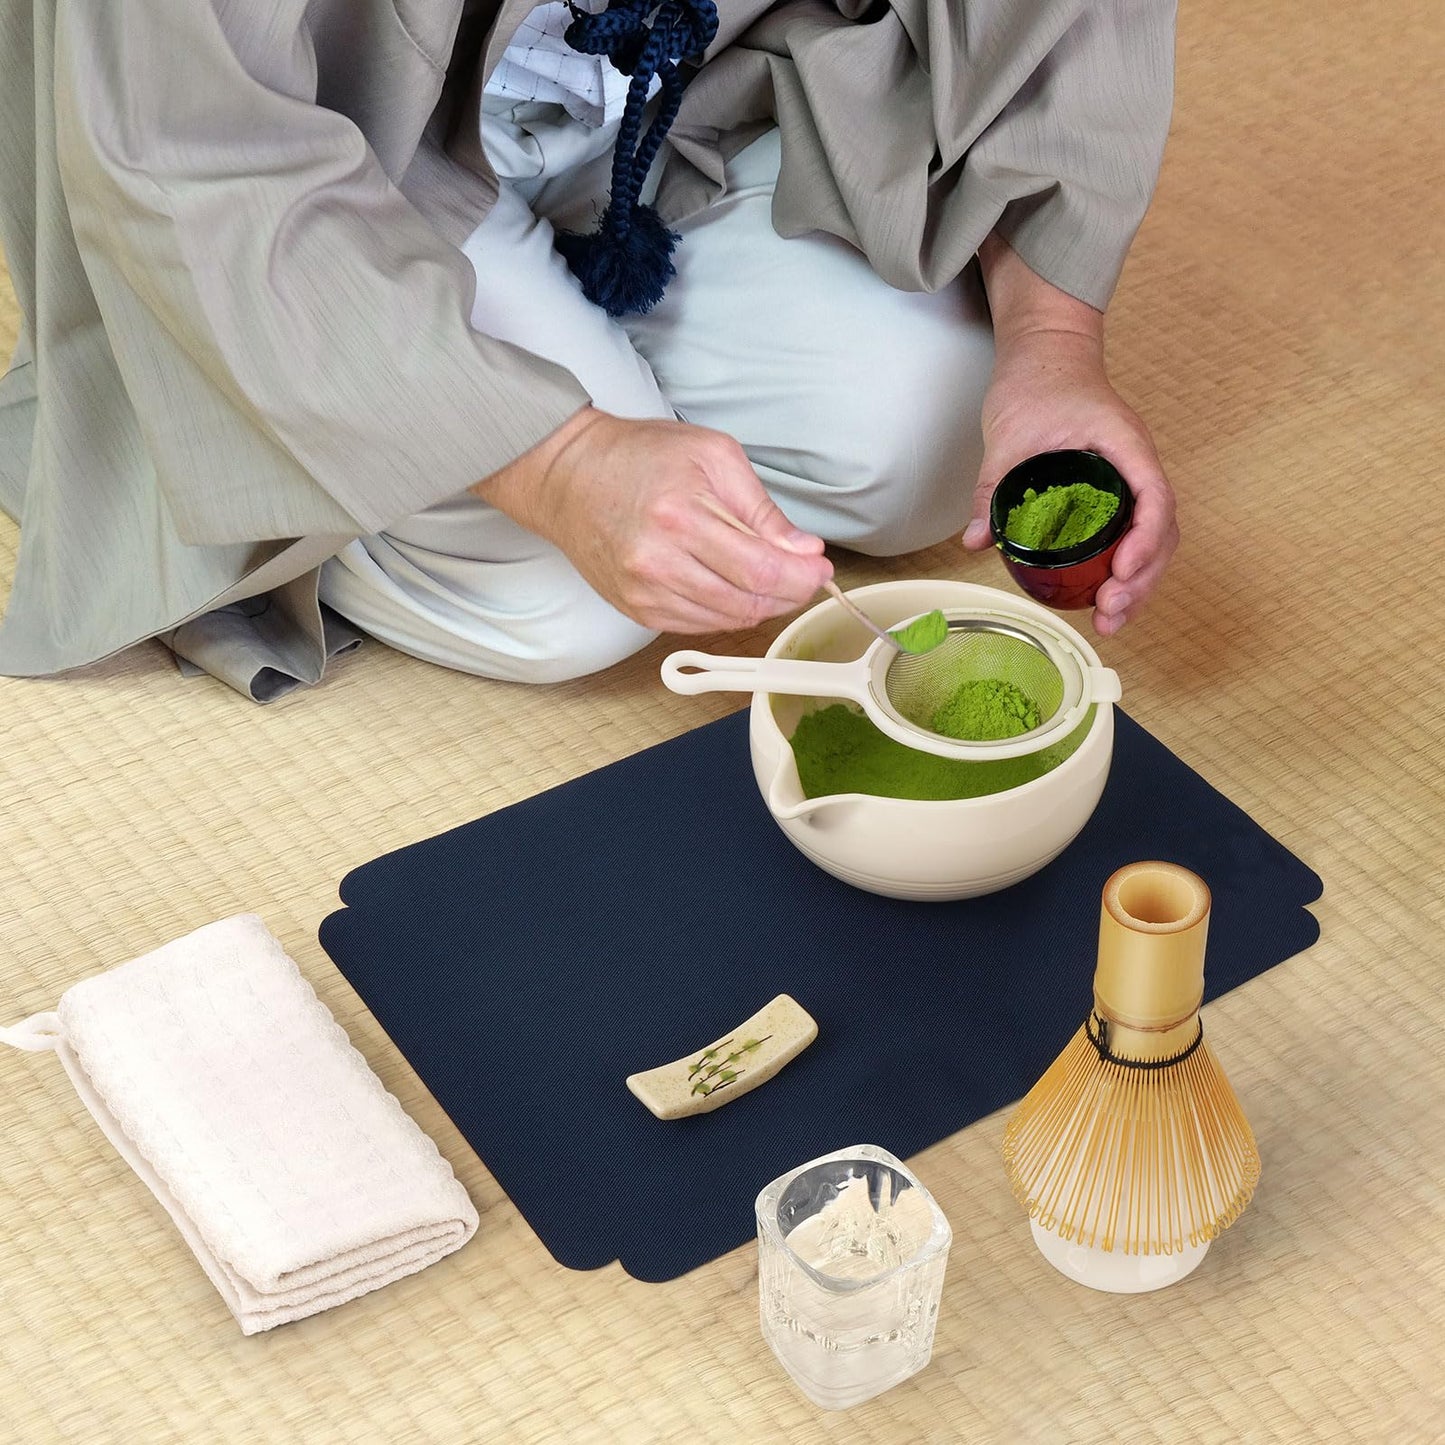 Matcha Tea Kit